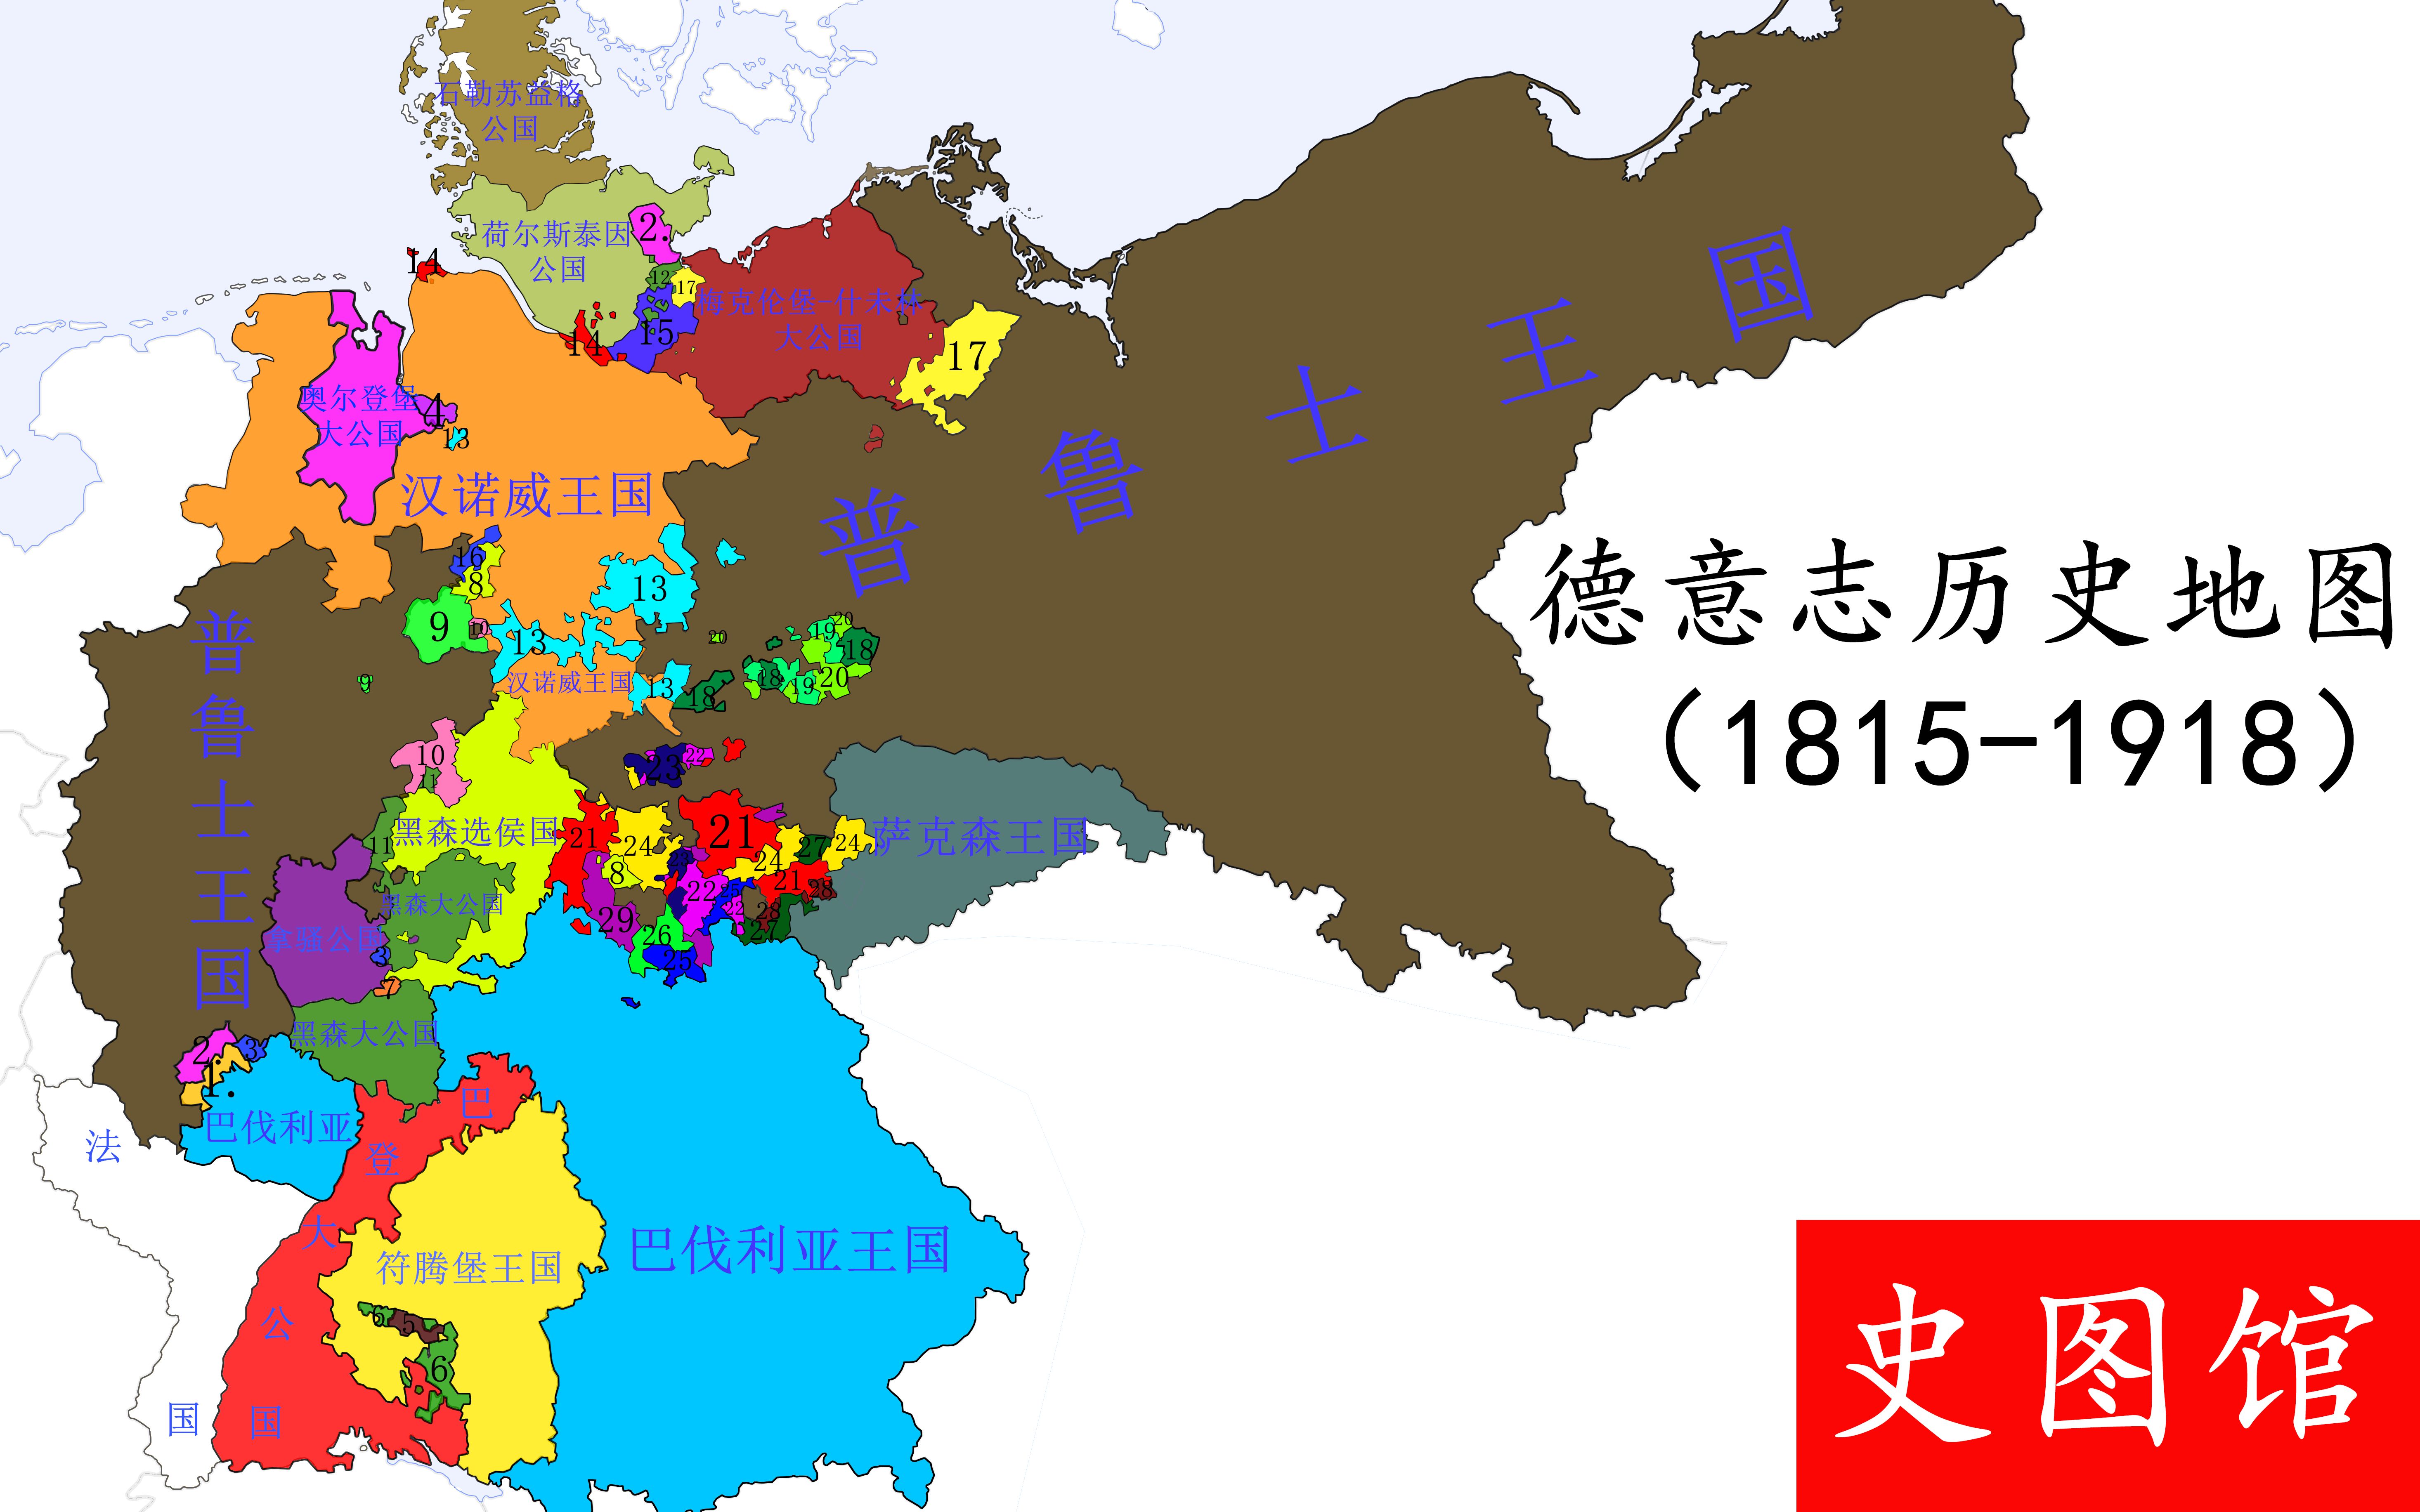 【史图馆】德意志历史地图(1815-1918)_哔哩哔哩_bilibili